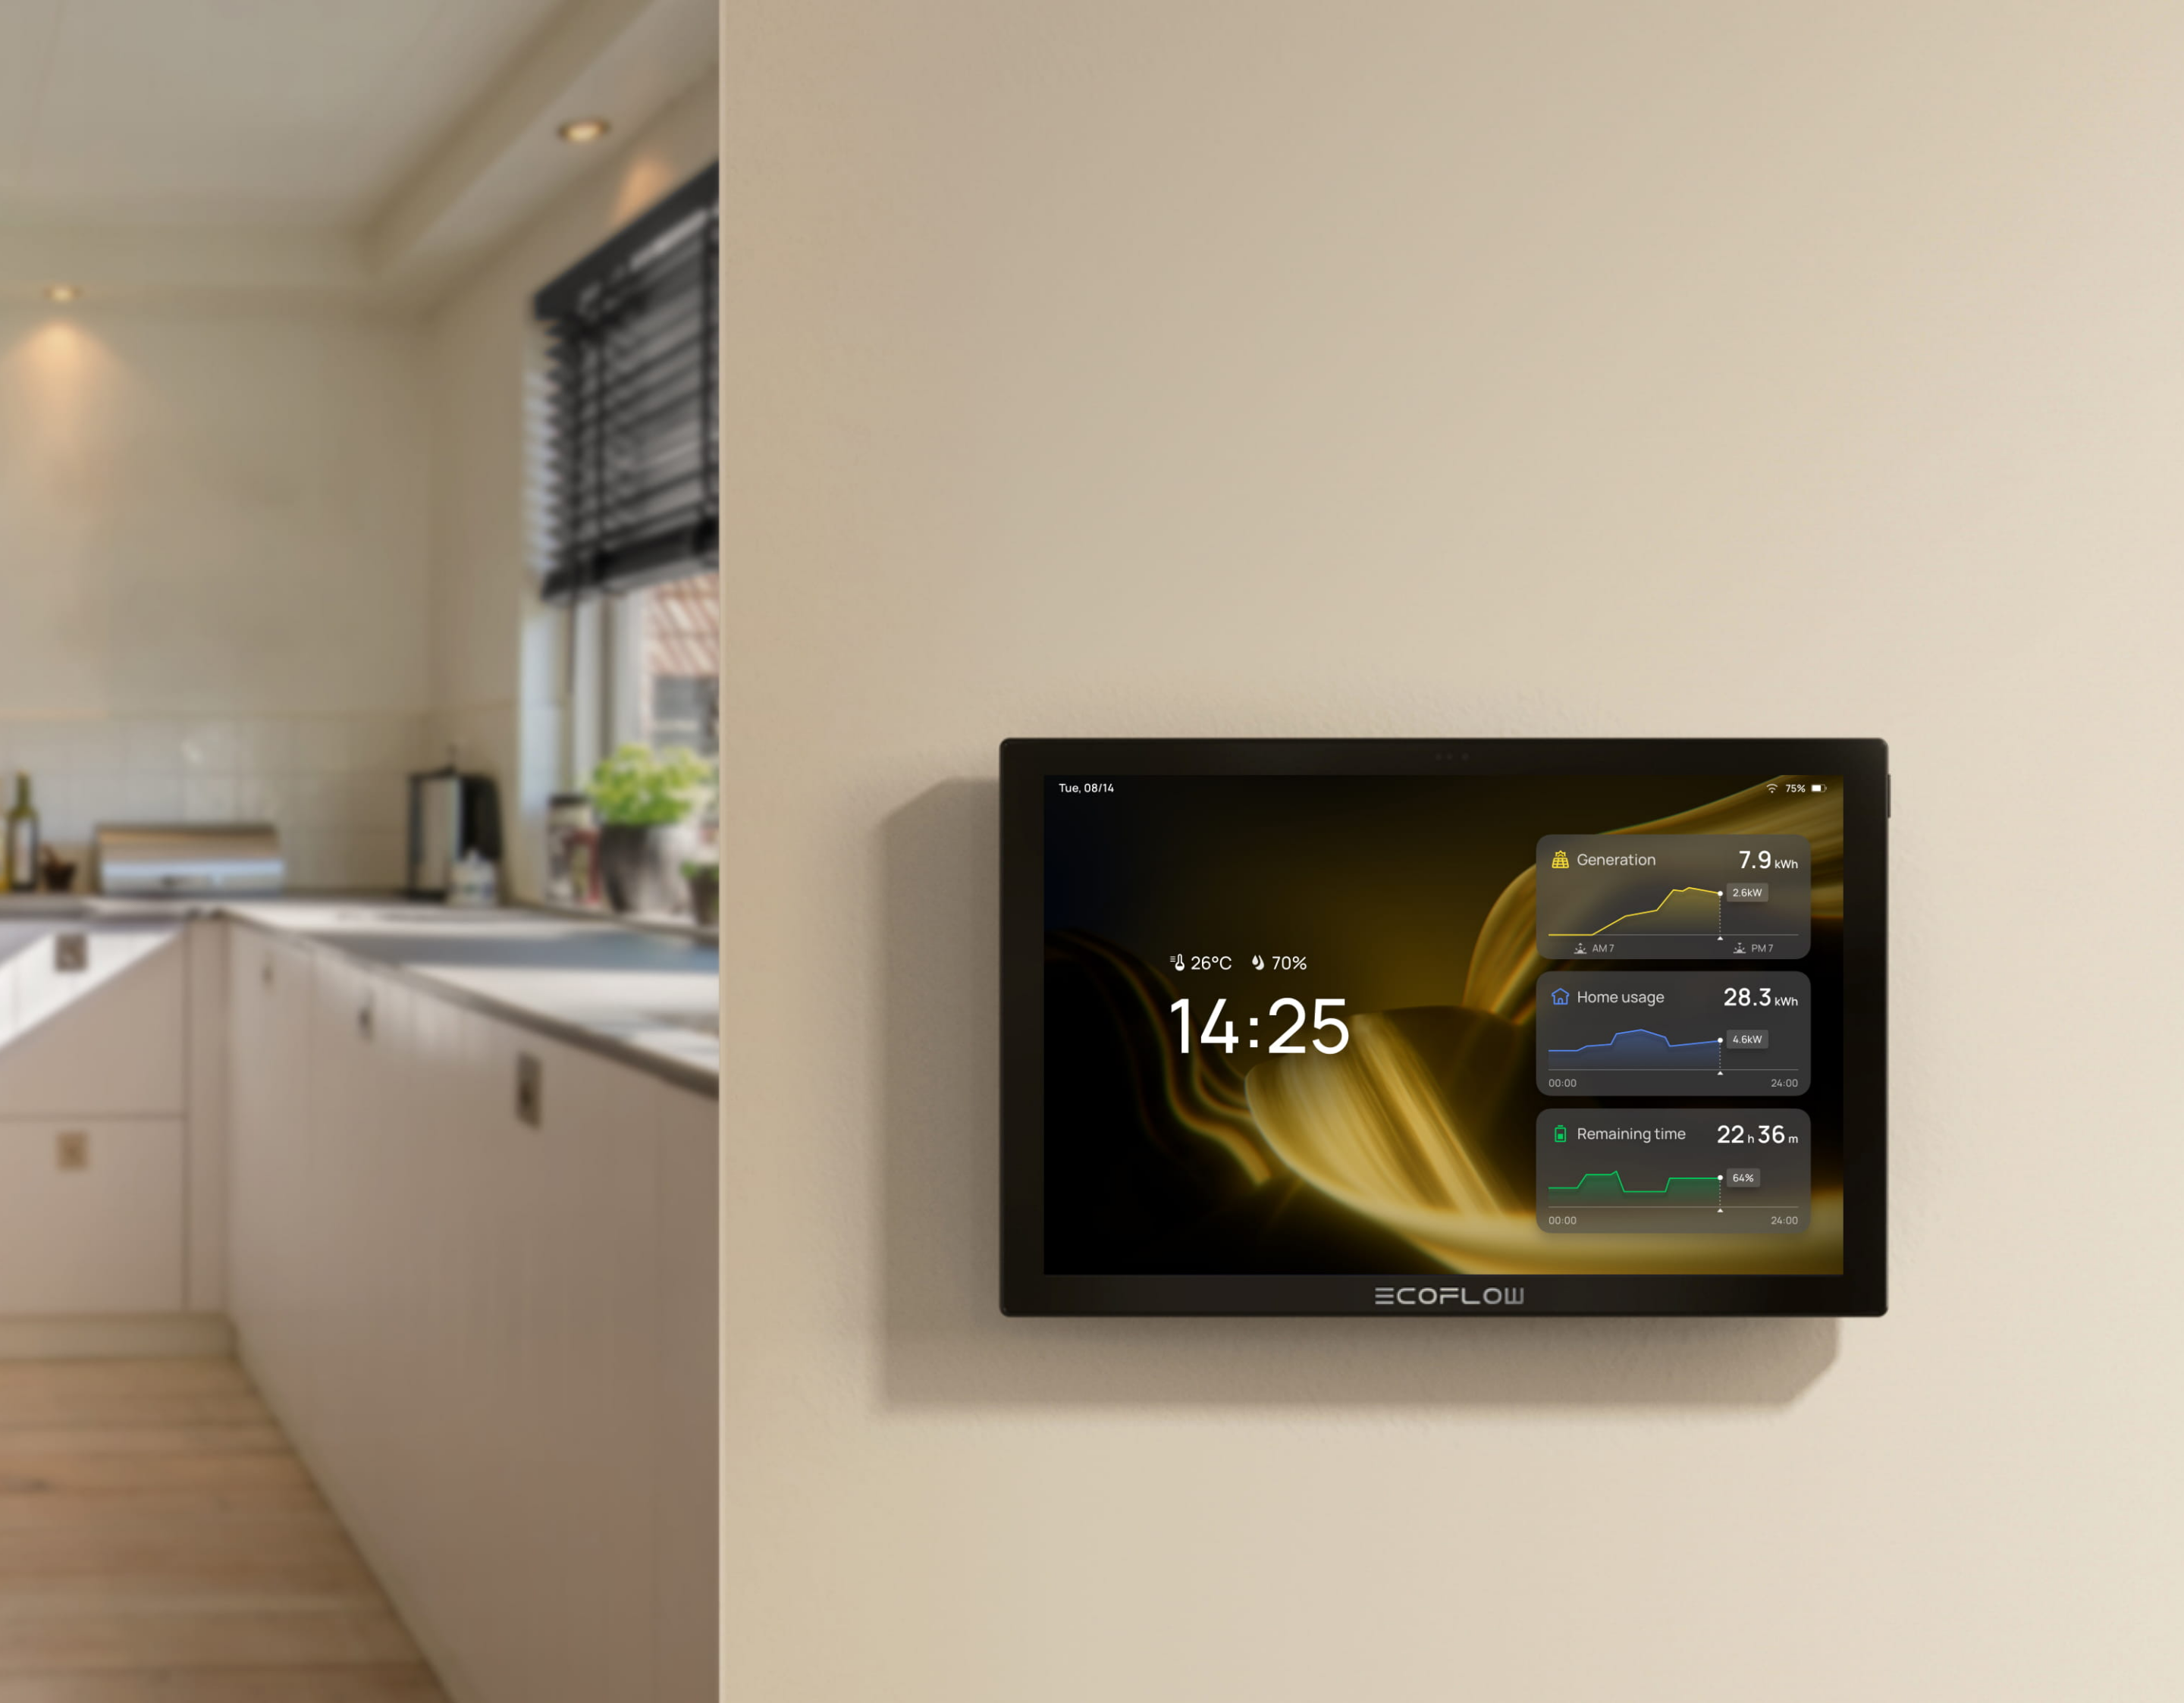 Neues Matter-Display von EcoFlow, IKEA kündigt Sensoren an und mehr